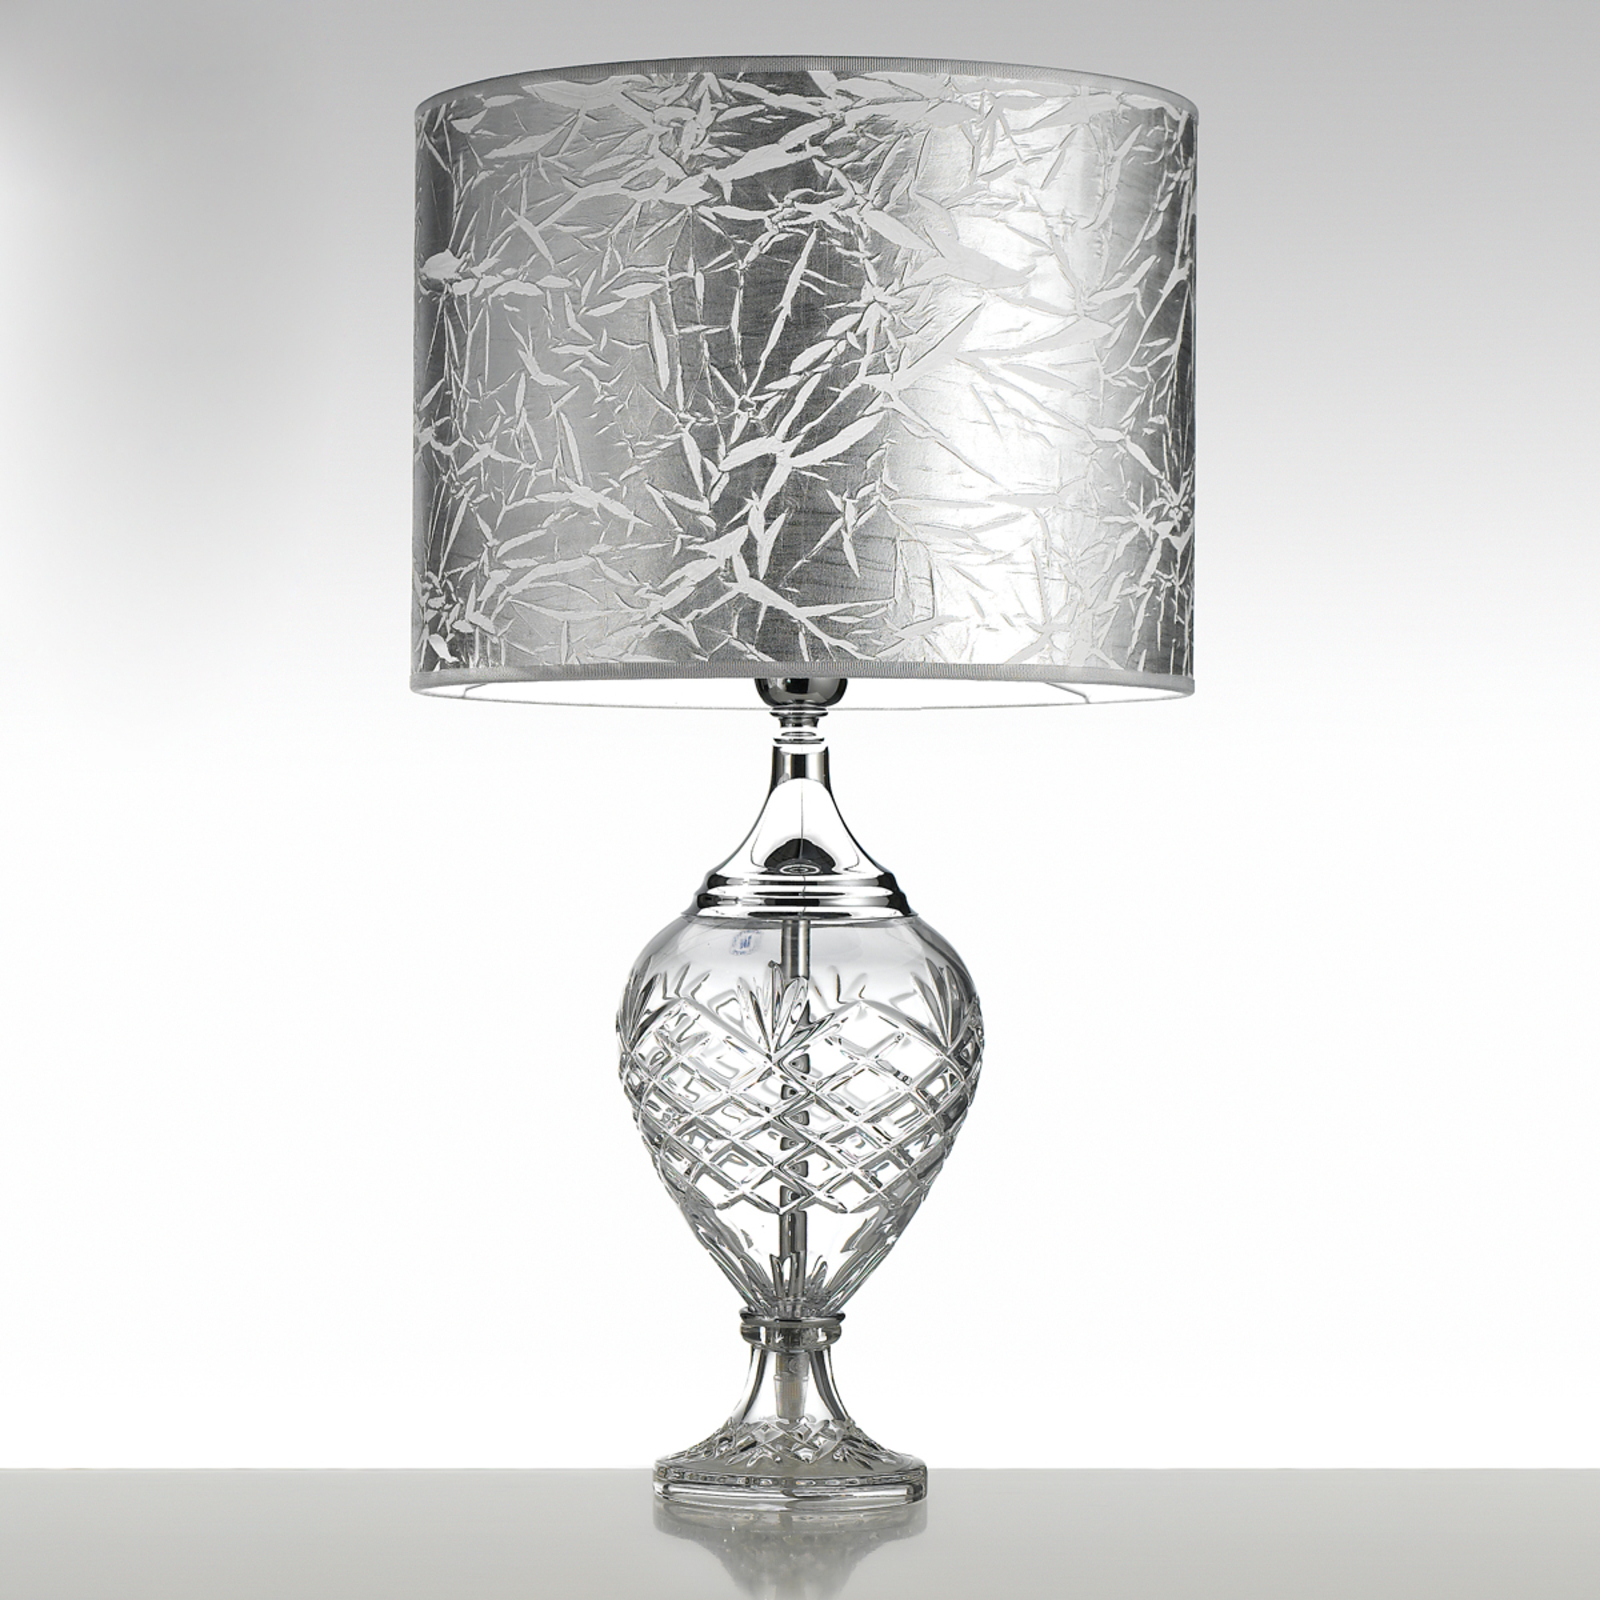 verteren Verfrissend Donau Belle epoque - edele tafellamp met glazen voet | Lampen24.be